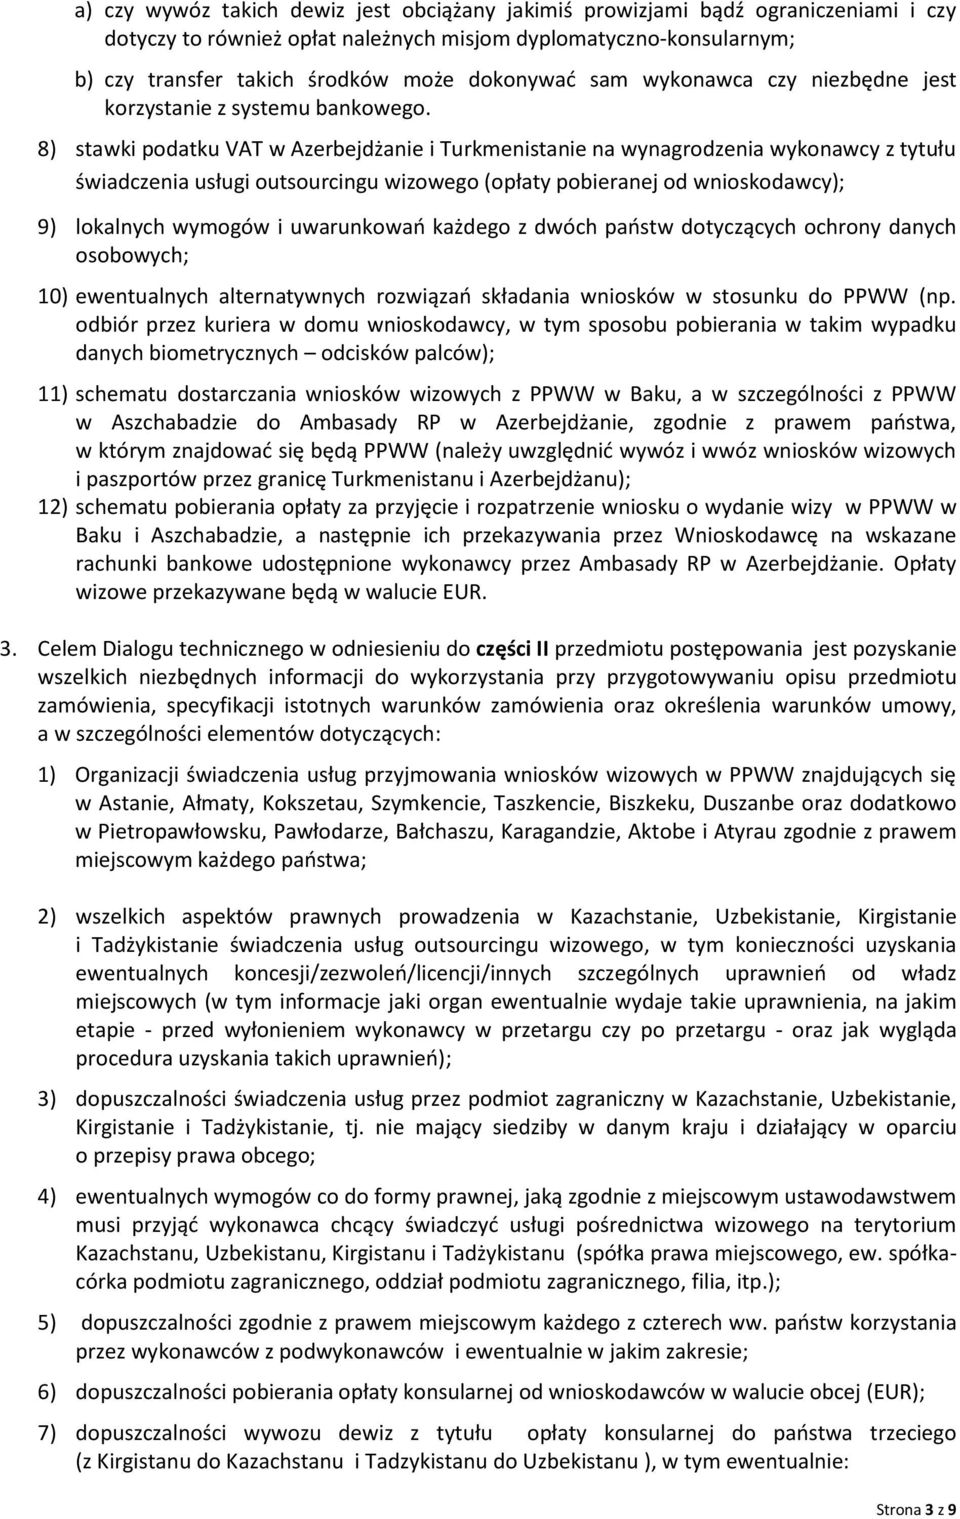 8) stawki podatku VAT w Azerbejdżanie i Turkmenistanie na wynagrodzenia wykonawcy z tytułu świadczenia usługi outsourcingu wizowego (opłaty pobieranej od wnioskodawcy); 9) lokalnych wymogów i